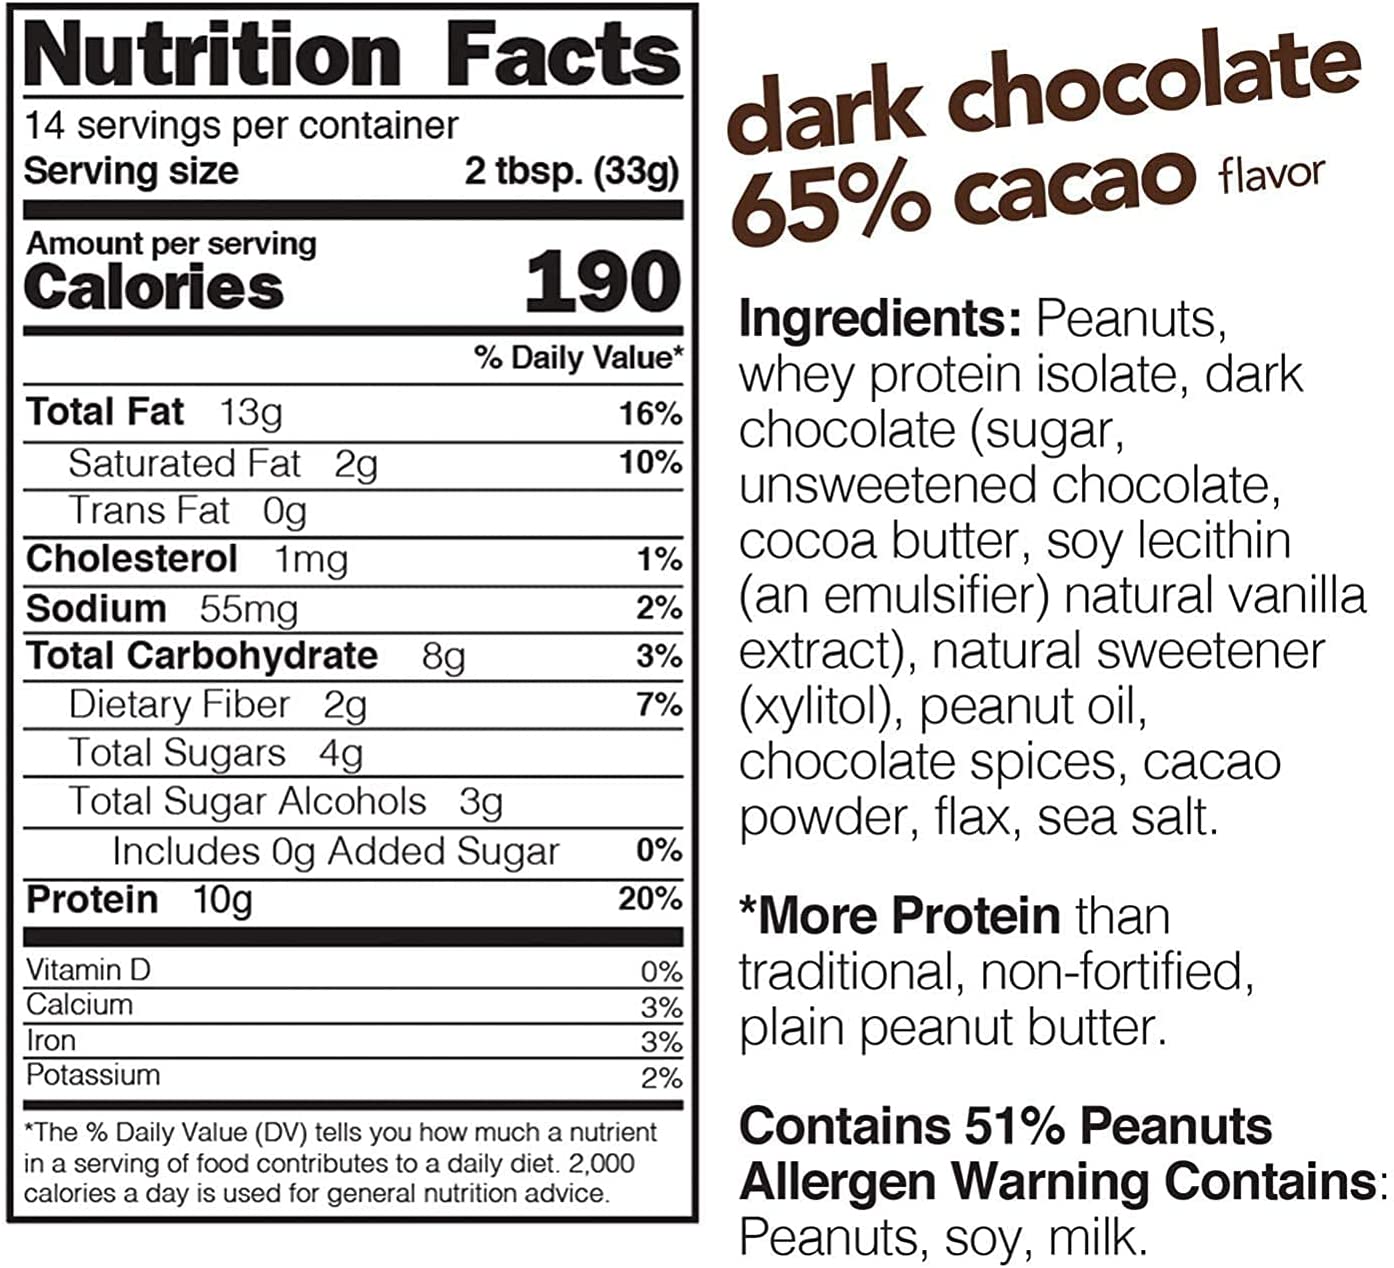 PEANUT BUTTERS SPREAD DARK CHOCOLATE 65% COCOA / 1lb